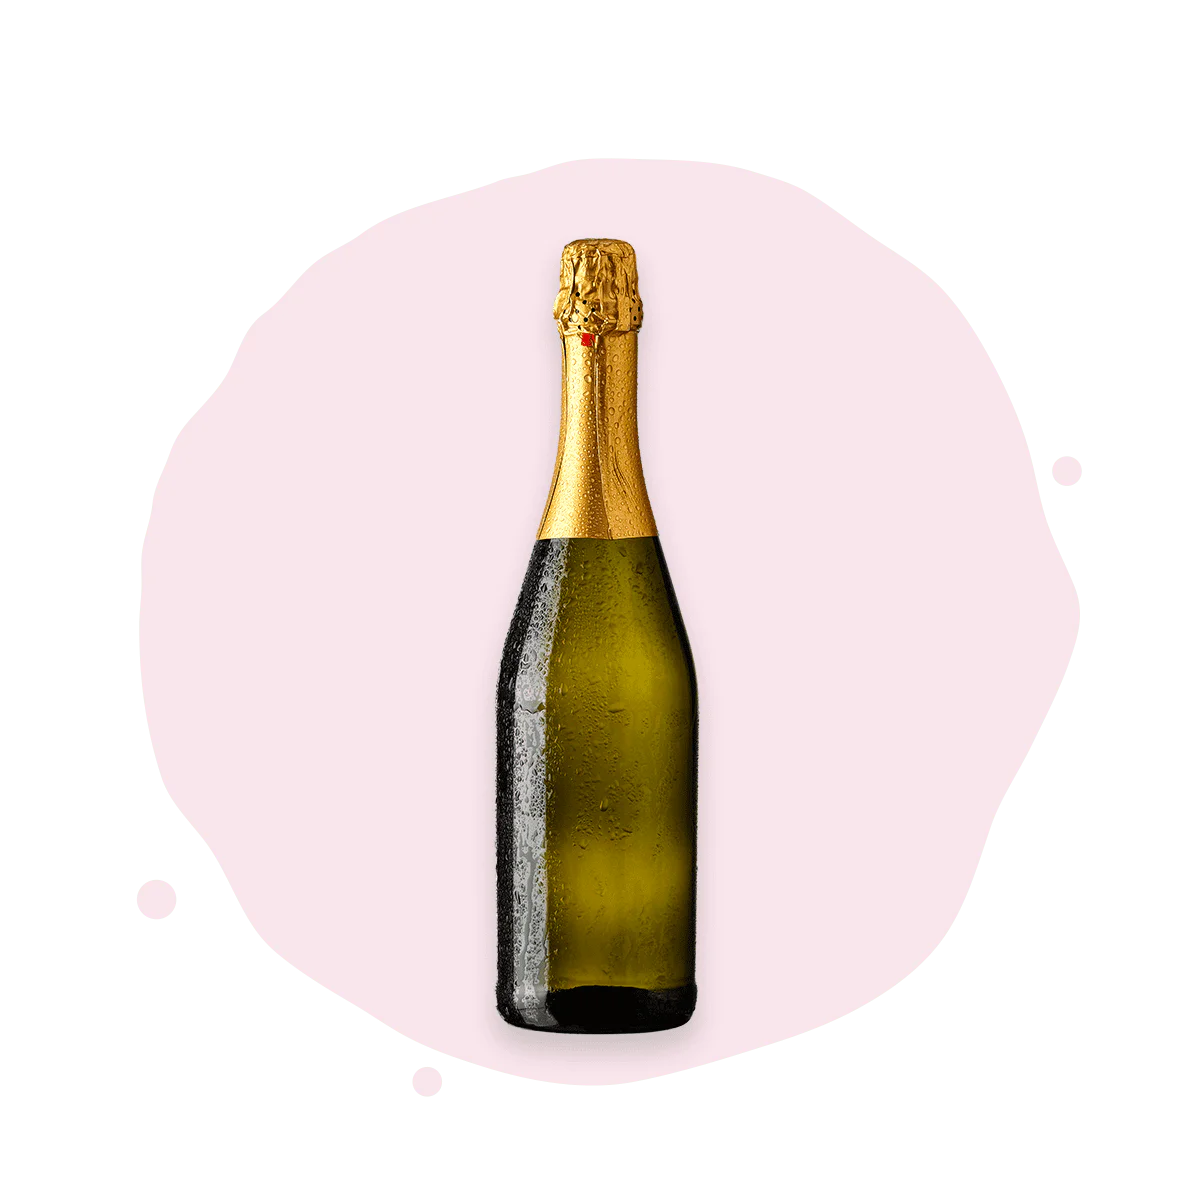 Vendita Online dei Migliori Champagne in Offerta su Bottle of Italy